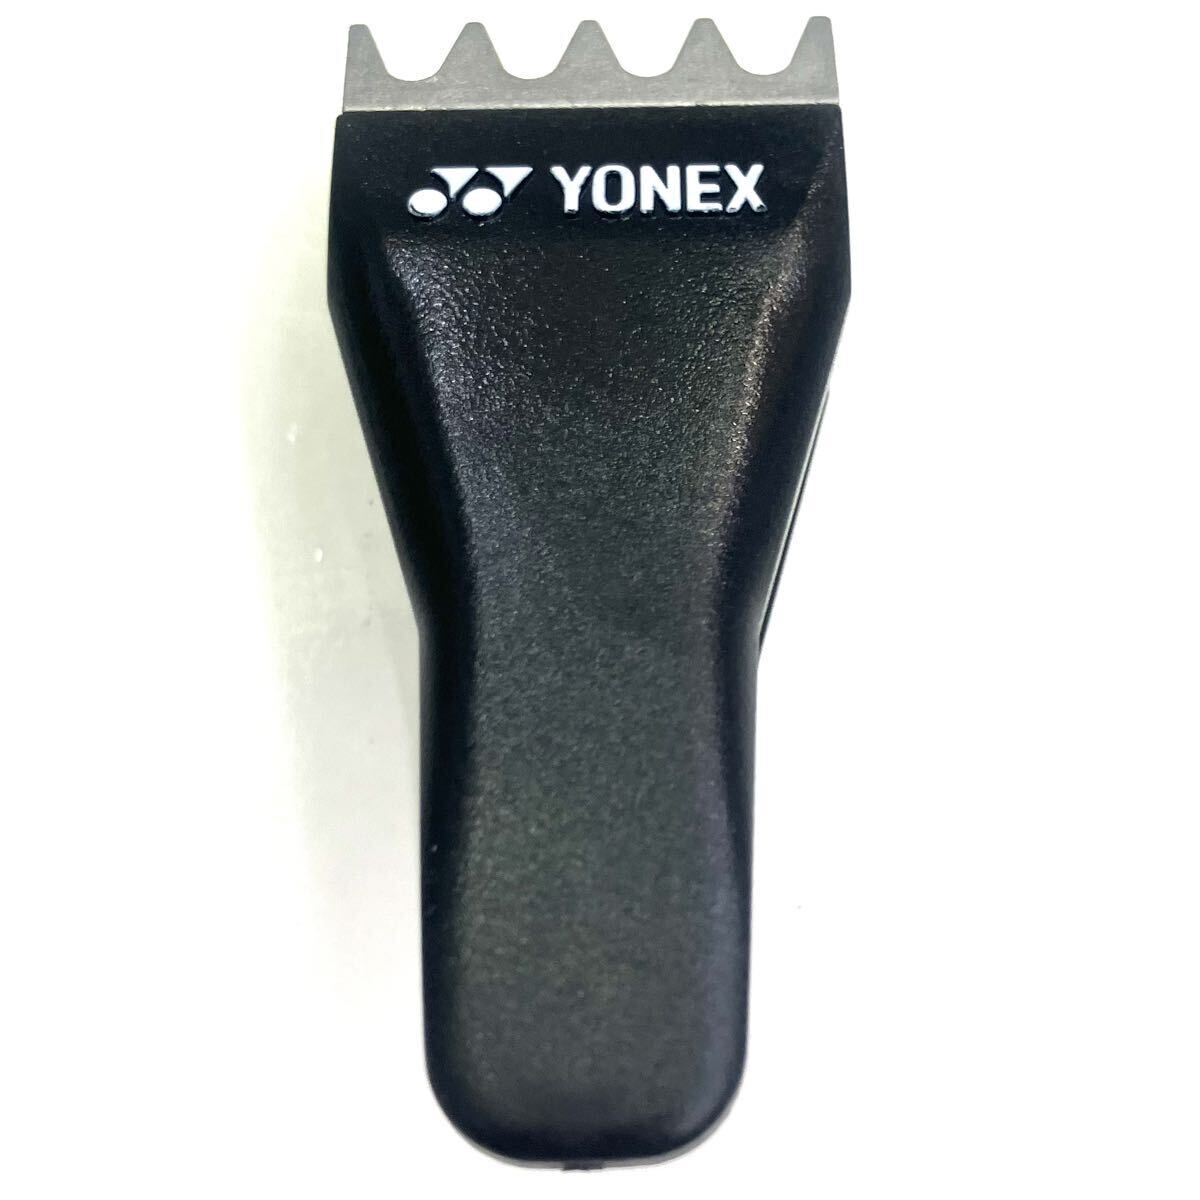  обычная цена 3630 иен Yonex YONEX AC607-007 [ strong -тактный кольцо зажим черный ] струна обивка ракетка струна 